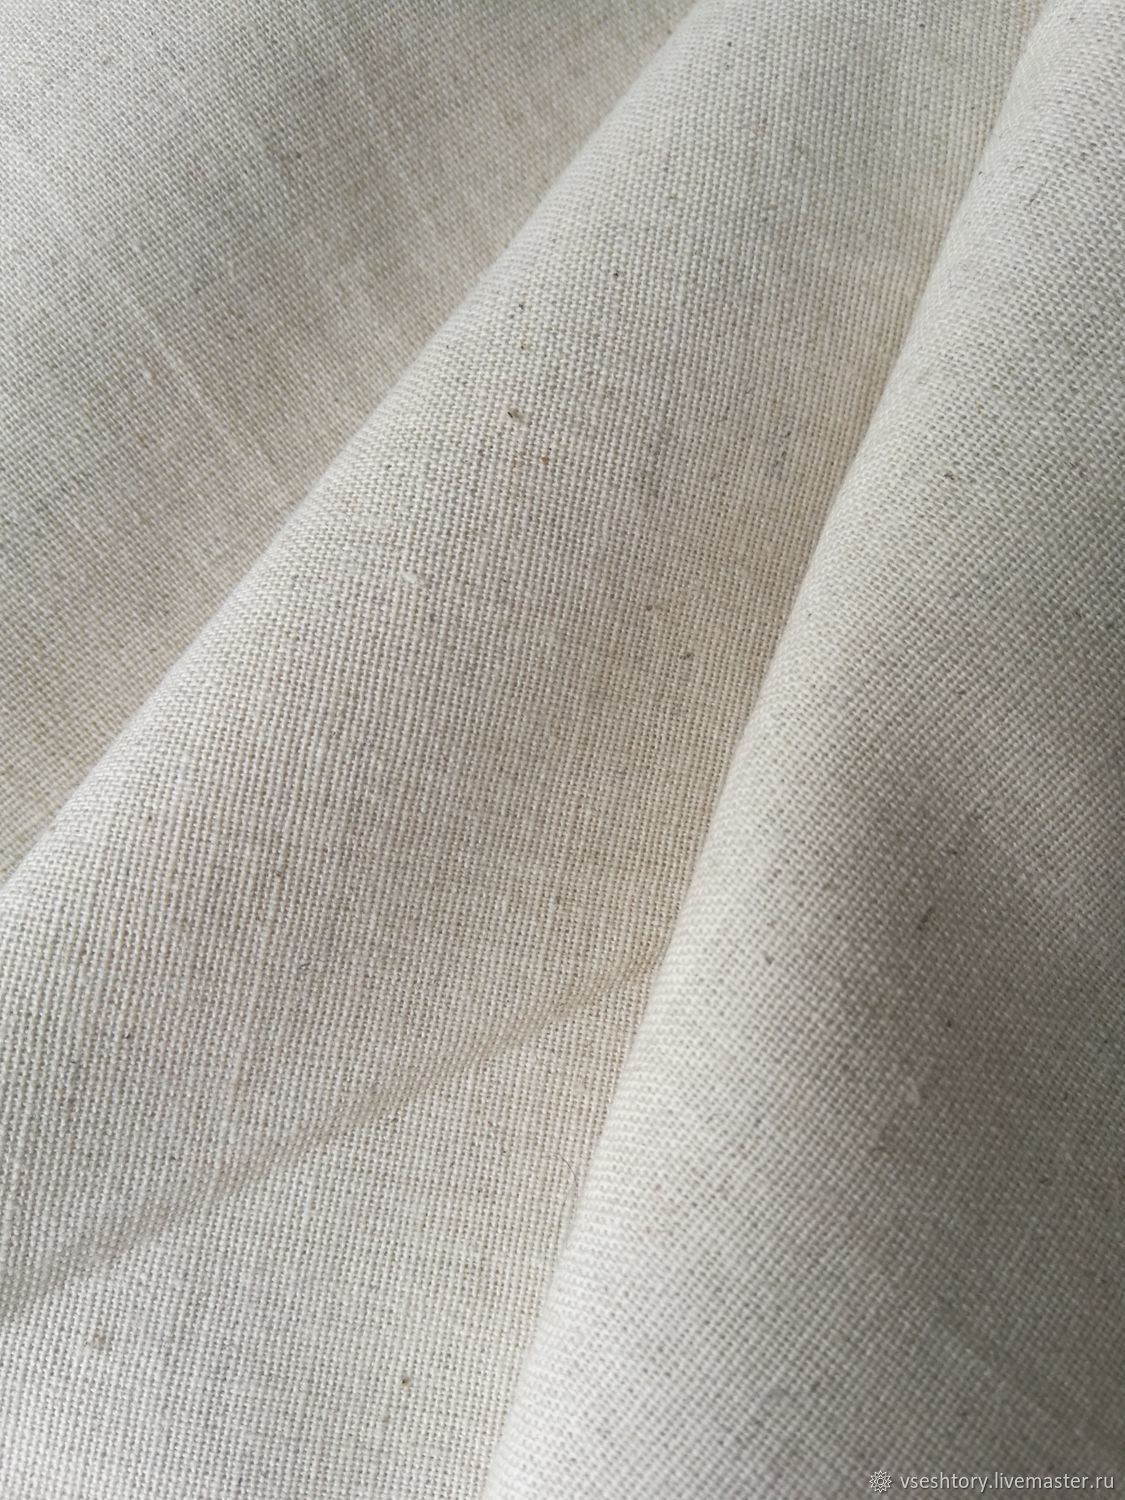 Магазин лен хлопок. Ткань Apollo Linen. Cotton Linen (4362/Изюм). Lima Linen ткань Аскона. Льняная ткань.